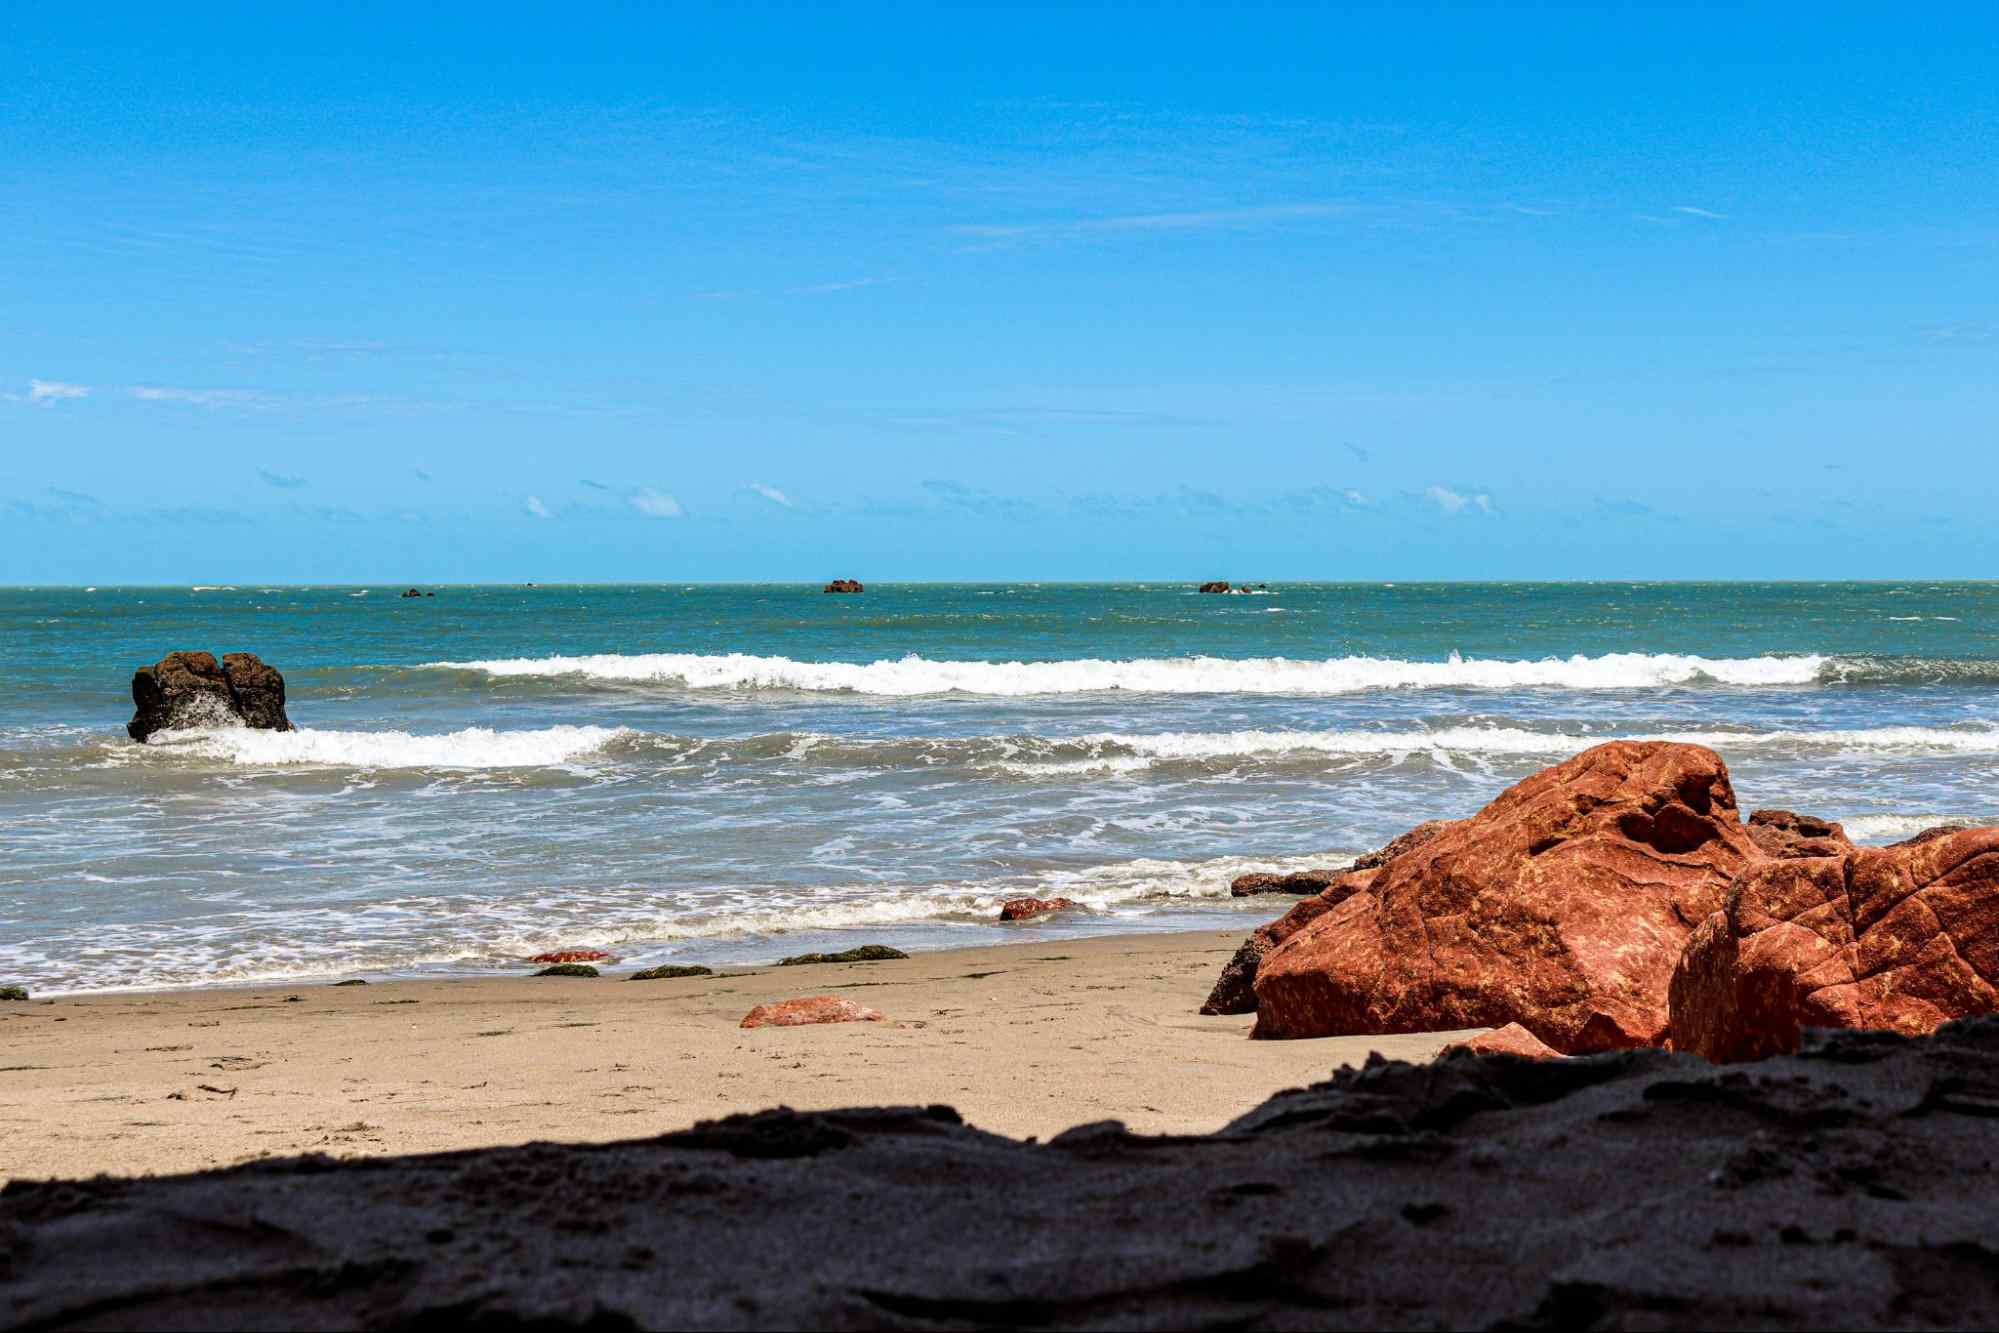 Grandes pedras na areia da praia de Icapuí, em frente ao mar, com céu azul e limpo. O mar se estende até o horizonte, e mais algumas pedras podem ser vistas com as pontas para fora do mar.